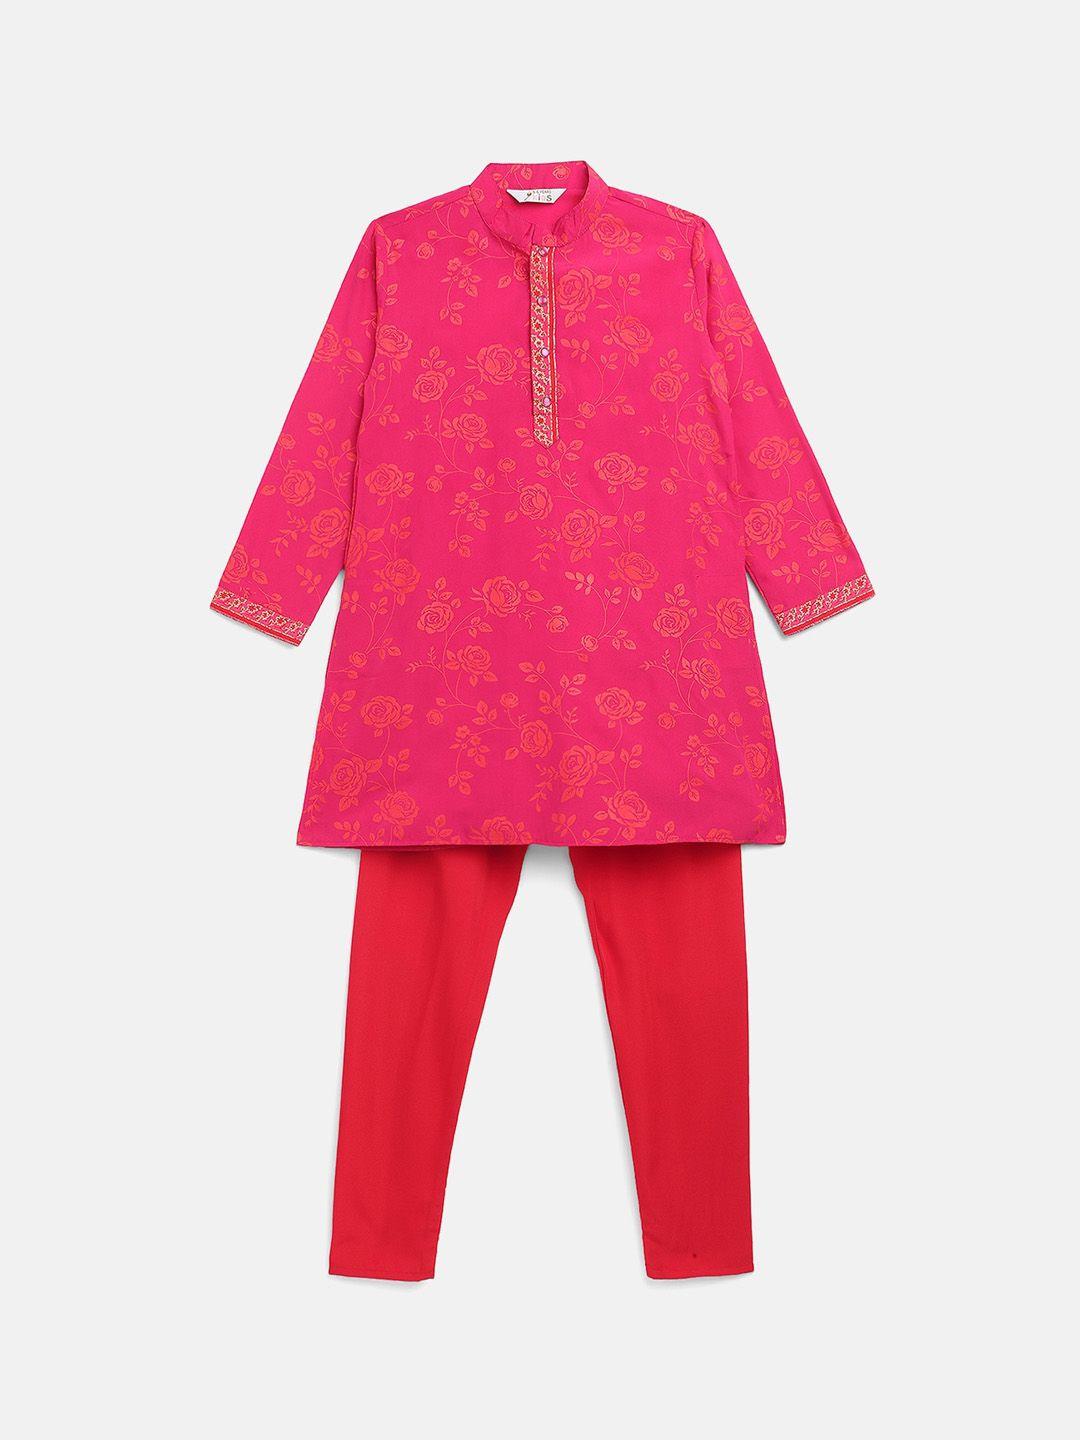 ahalyaa boys pink floral printed kurta with pyjamas